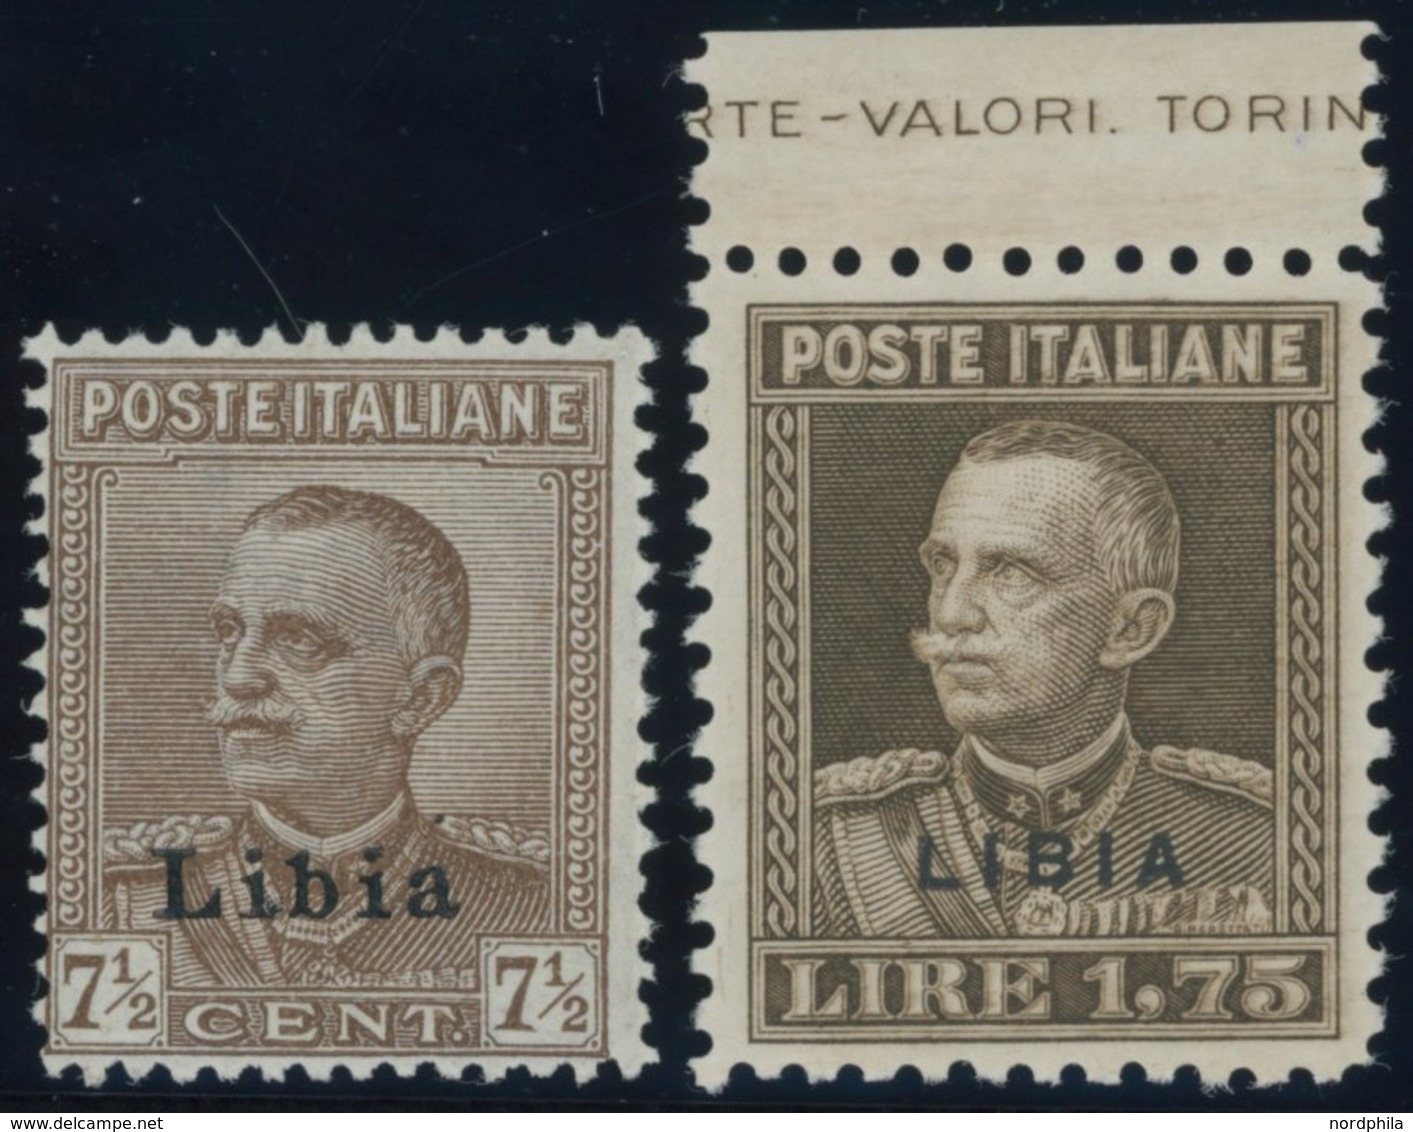 ITALIENISCH-LYBIEN 68,70A **, 1928, 71/2 Und 1.75 L. König Emanuel III, Gezähnt 11, 2 Postfrische Prachtwerte - Libia